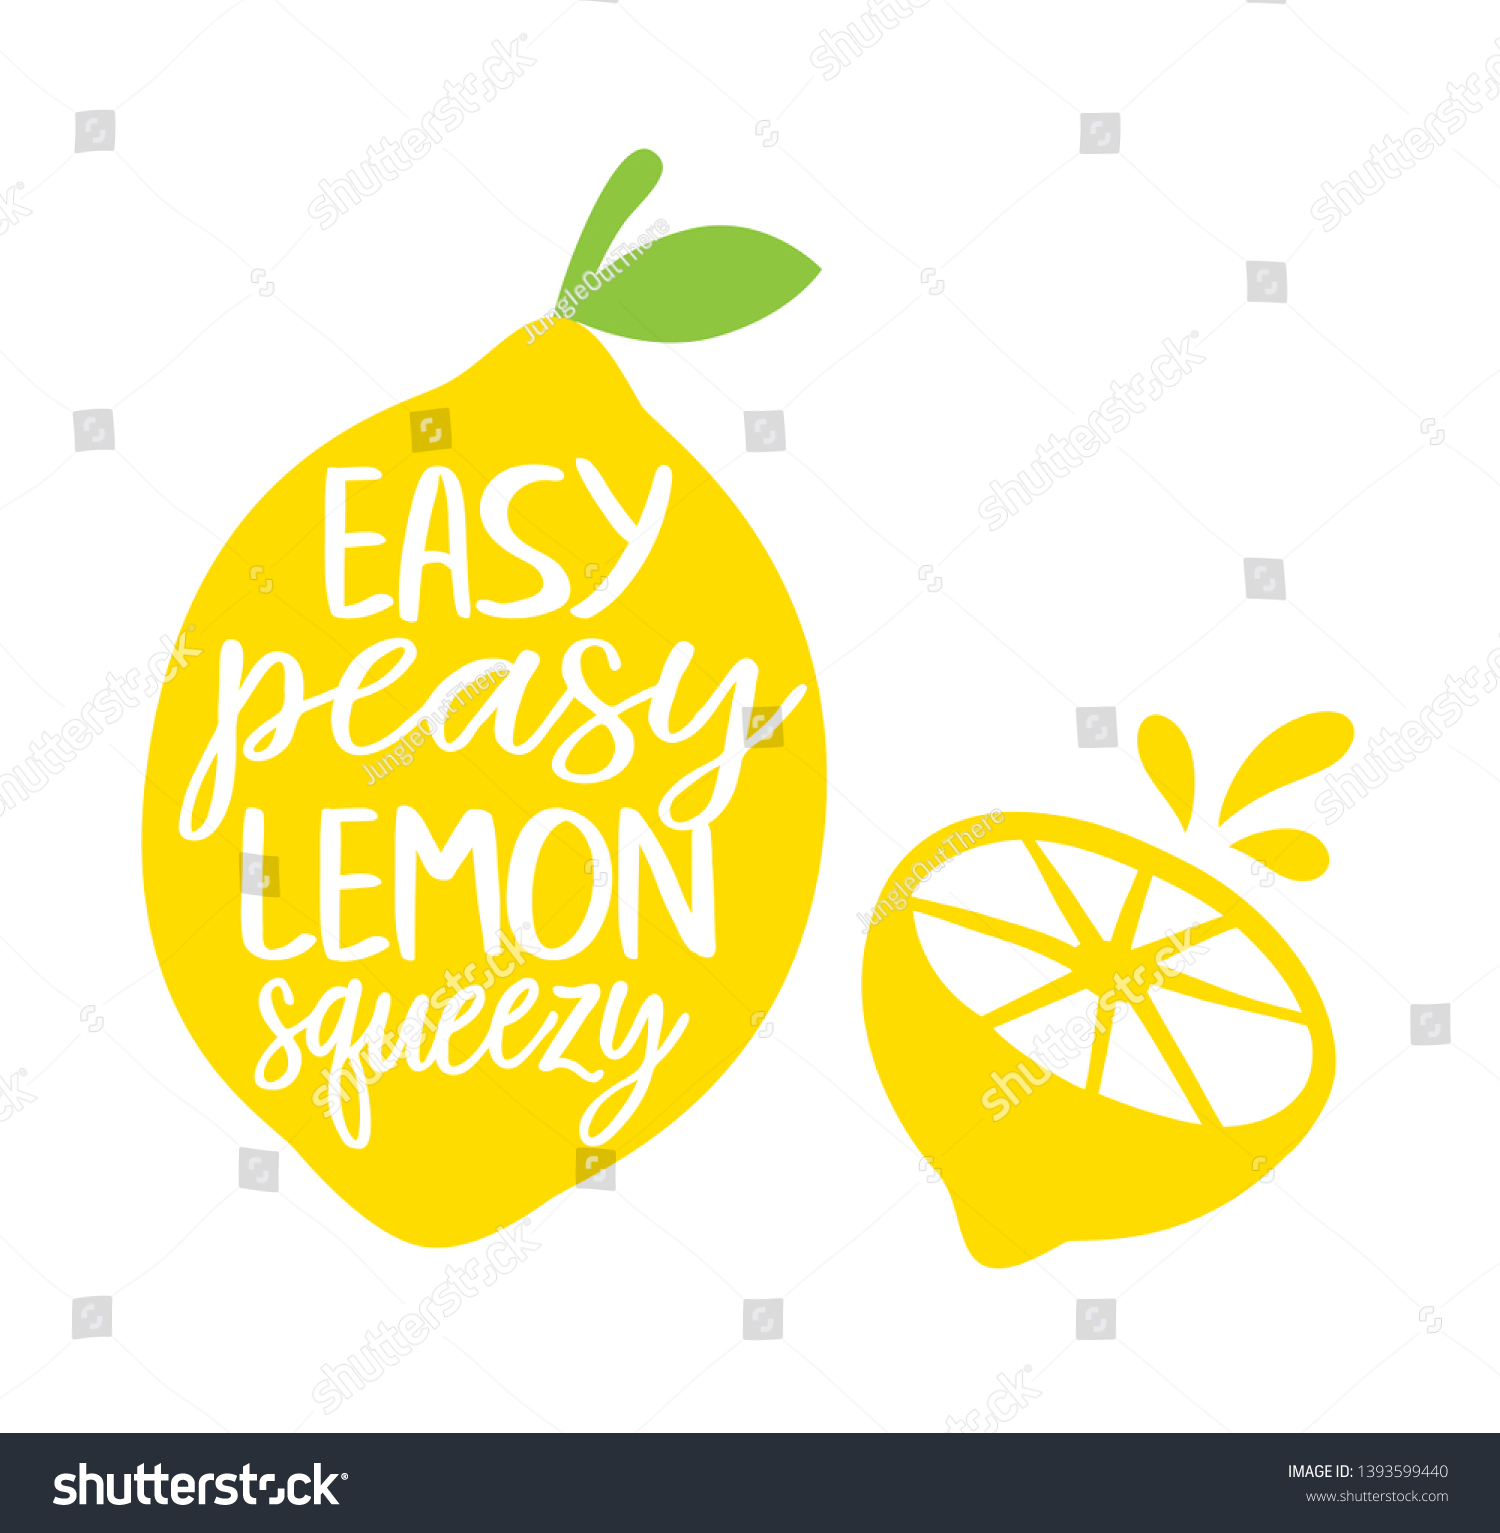 Easy Peasy Lemon Squeezy Vector Illustration. Full and sliced lemon. #1393599440